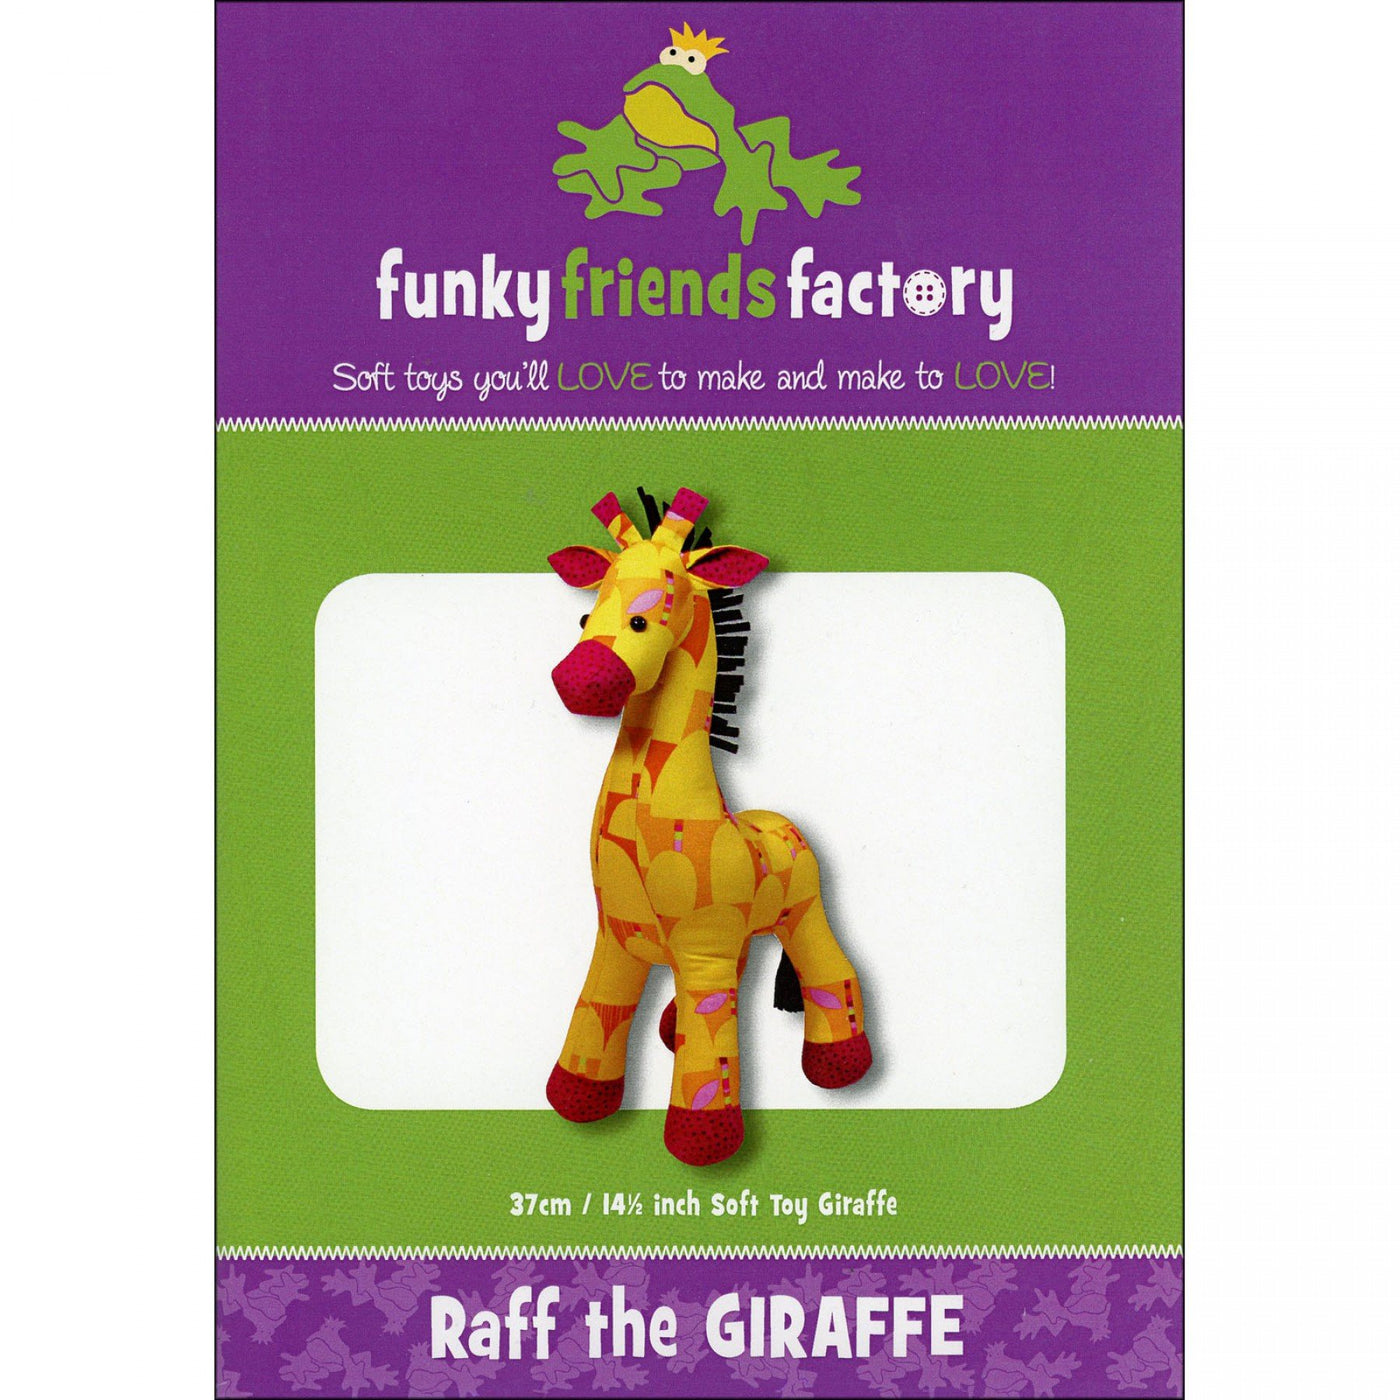 Raff the Giraffe by Funky Friends Factory